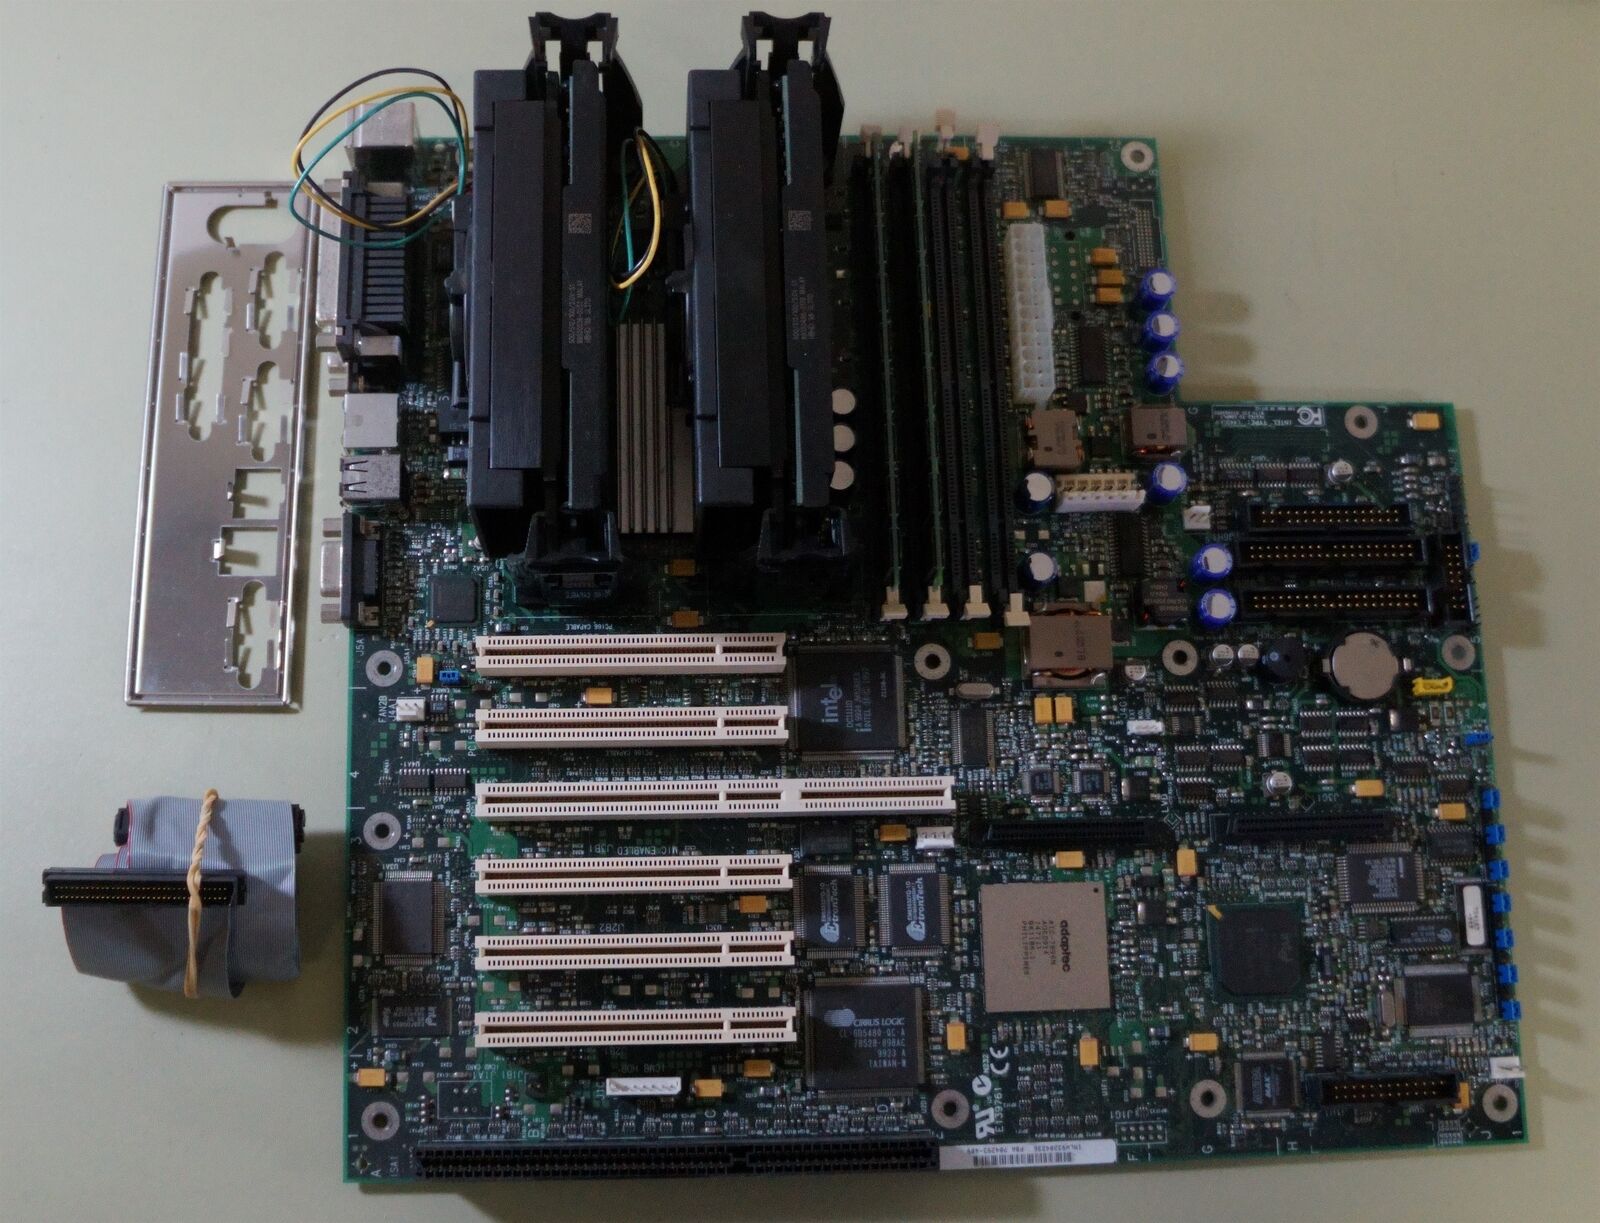 Intel L440GX+ Motherboard + Dual Pentium III 500 Mhz Processors - Tested w/Video